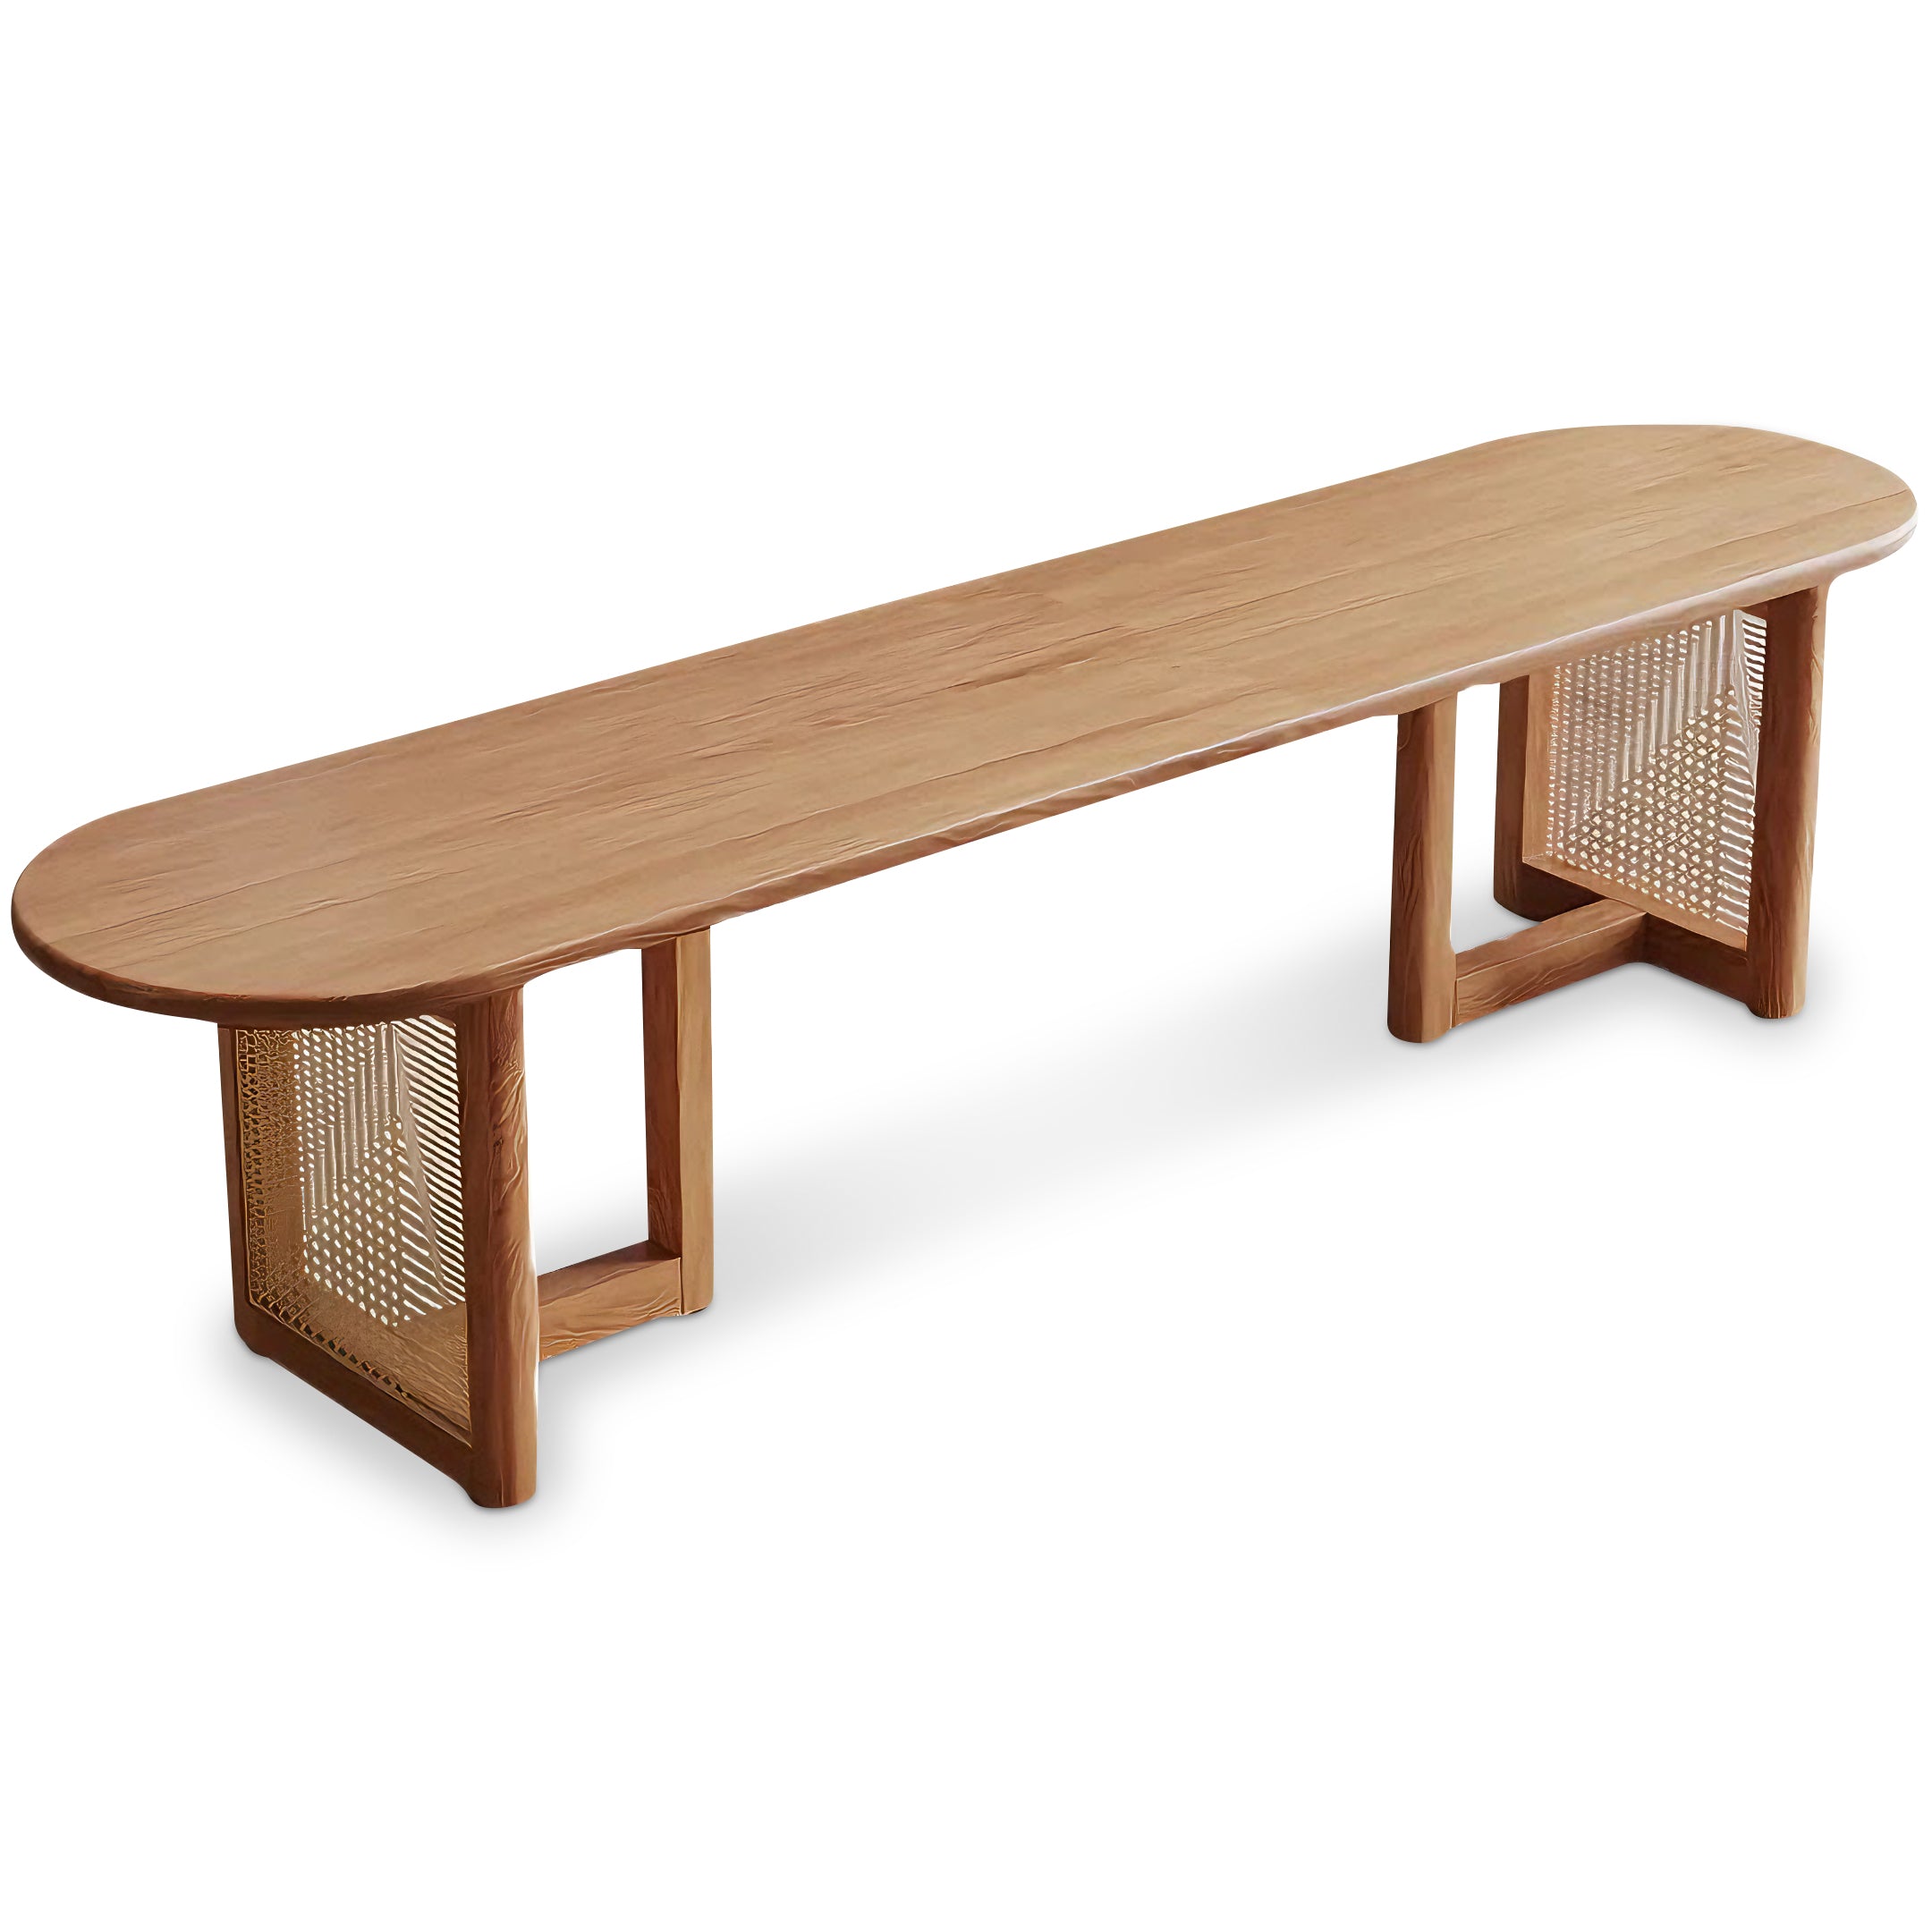 Calderer Table